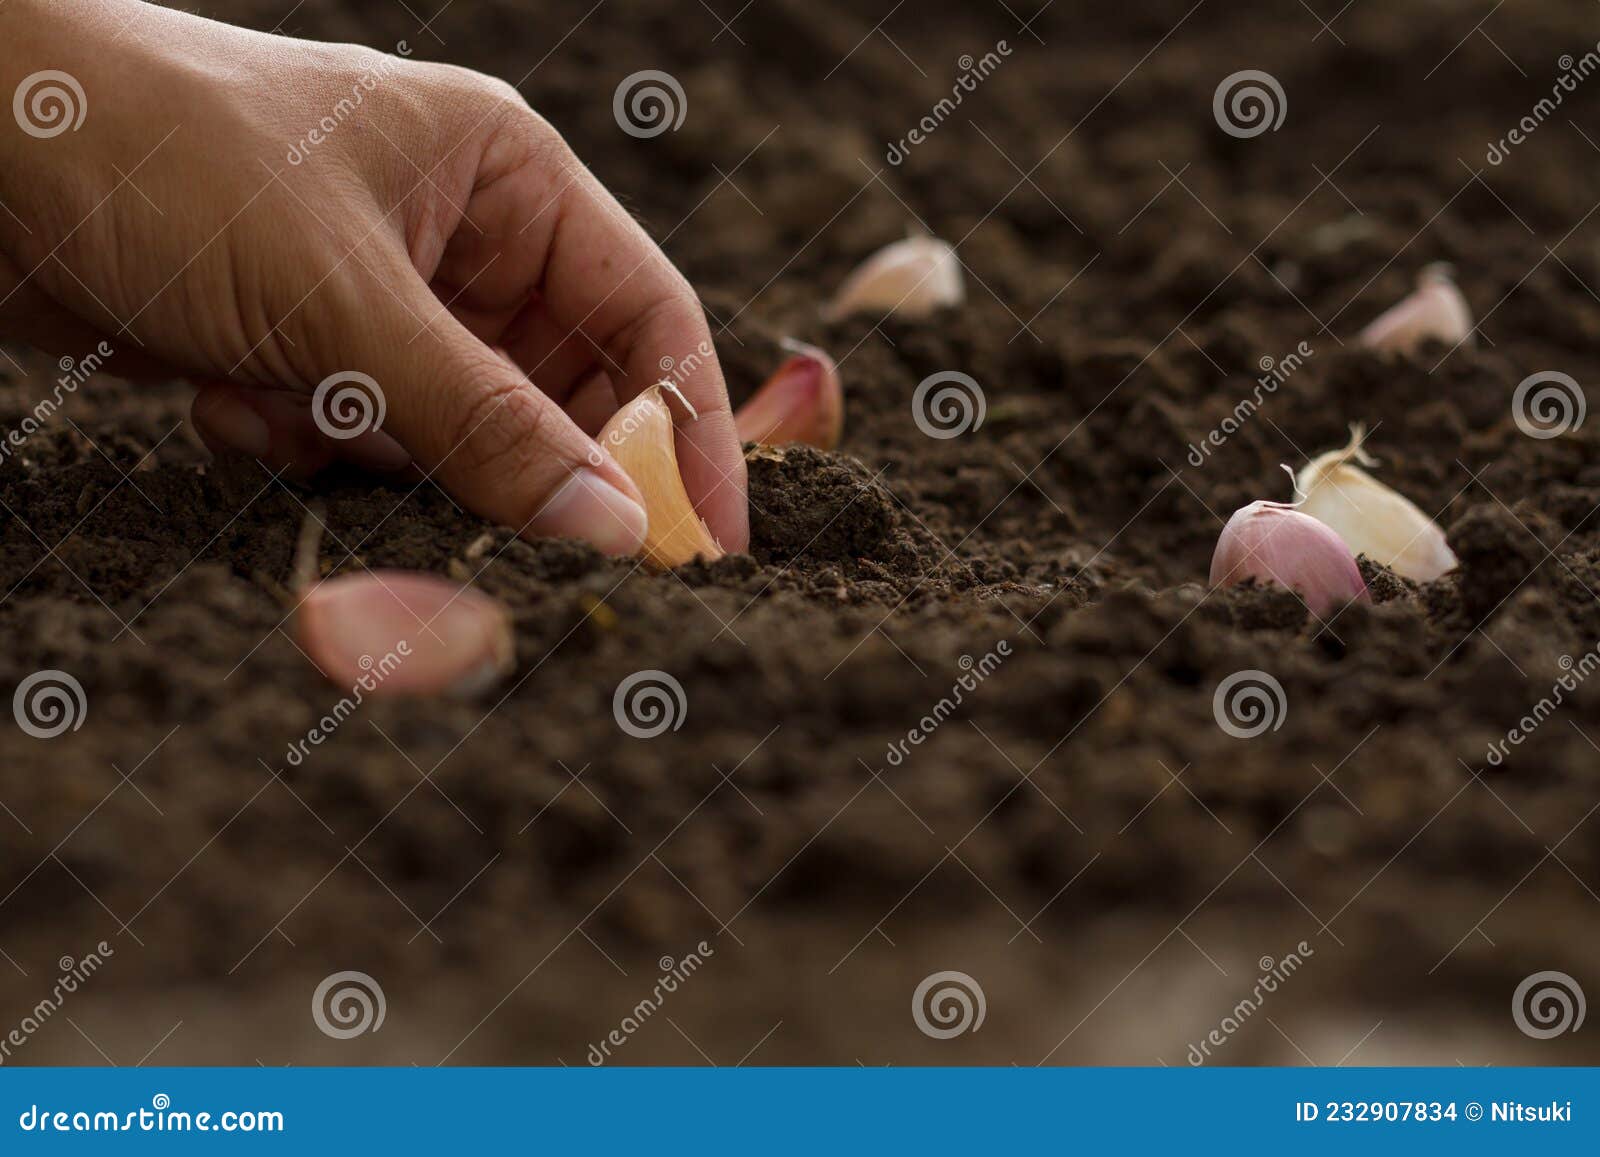 farmer planting garlic clove in soil at garden.